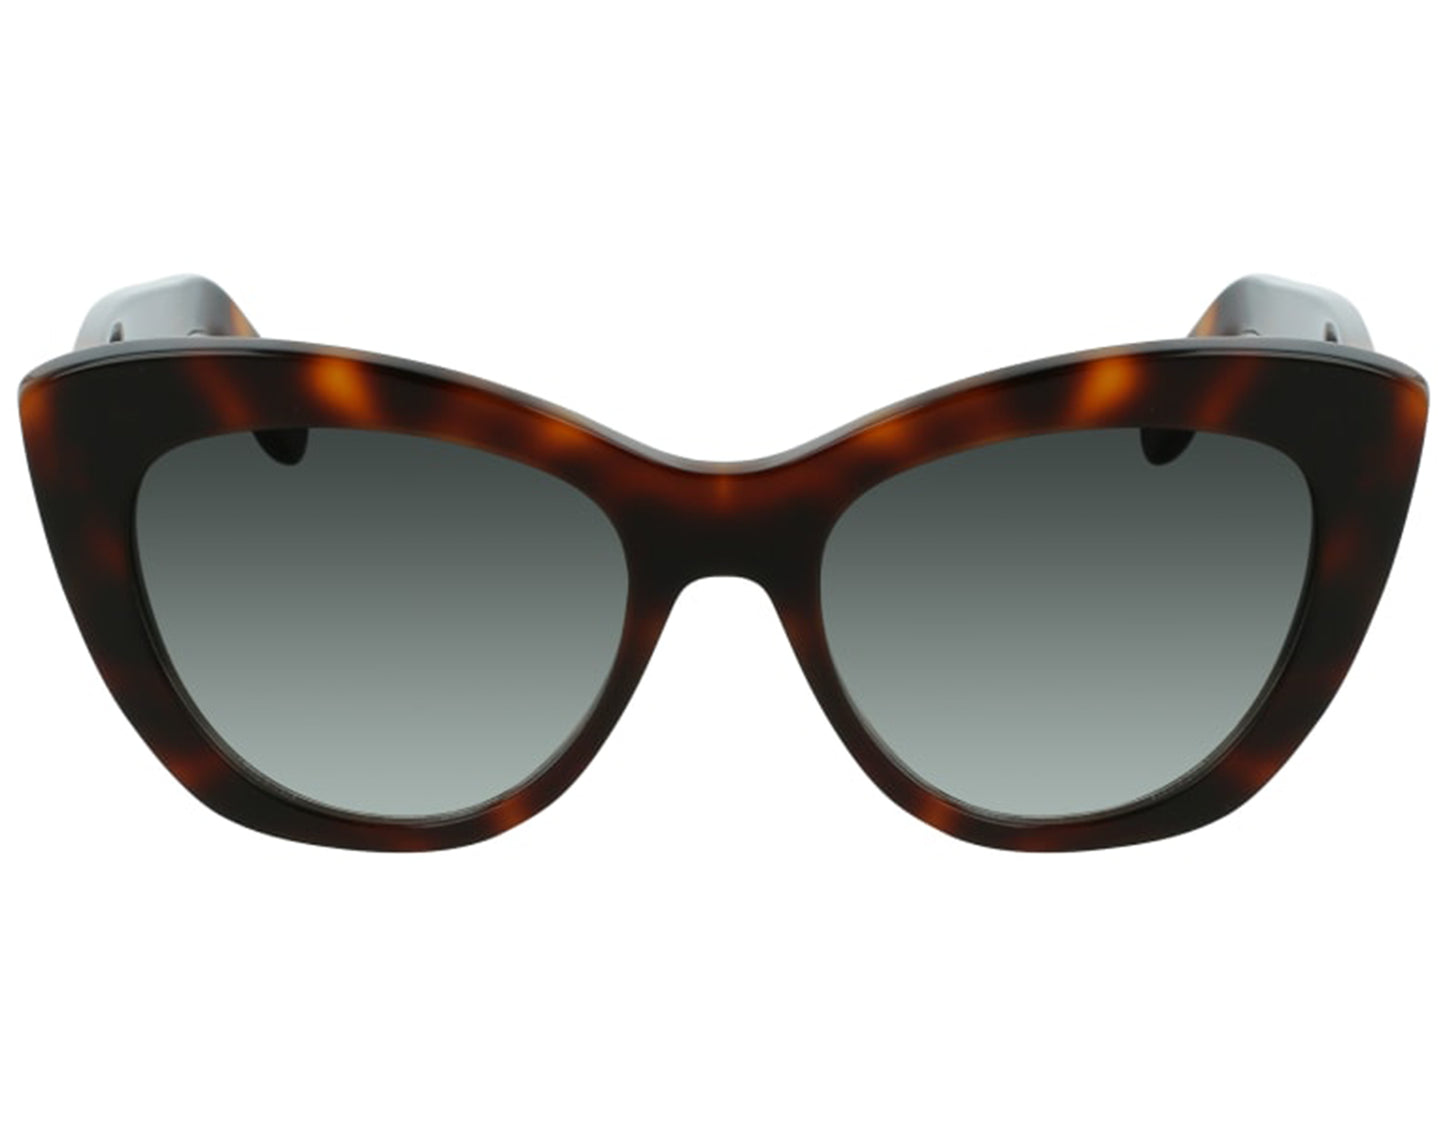 Salvatore Ferragamo SF1022S-214-52.9 53mm New Sunglasses